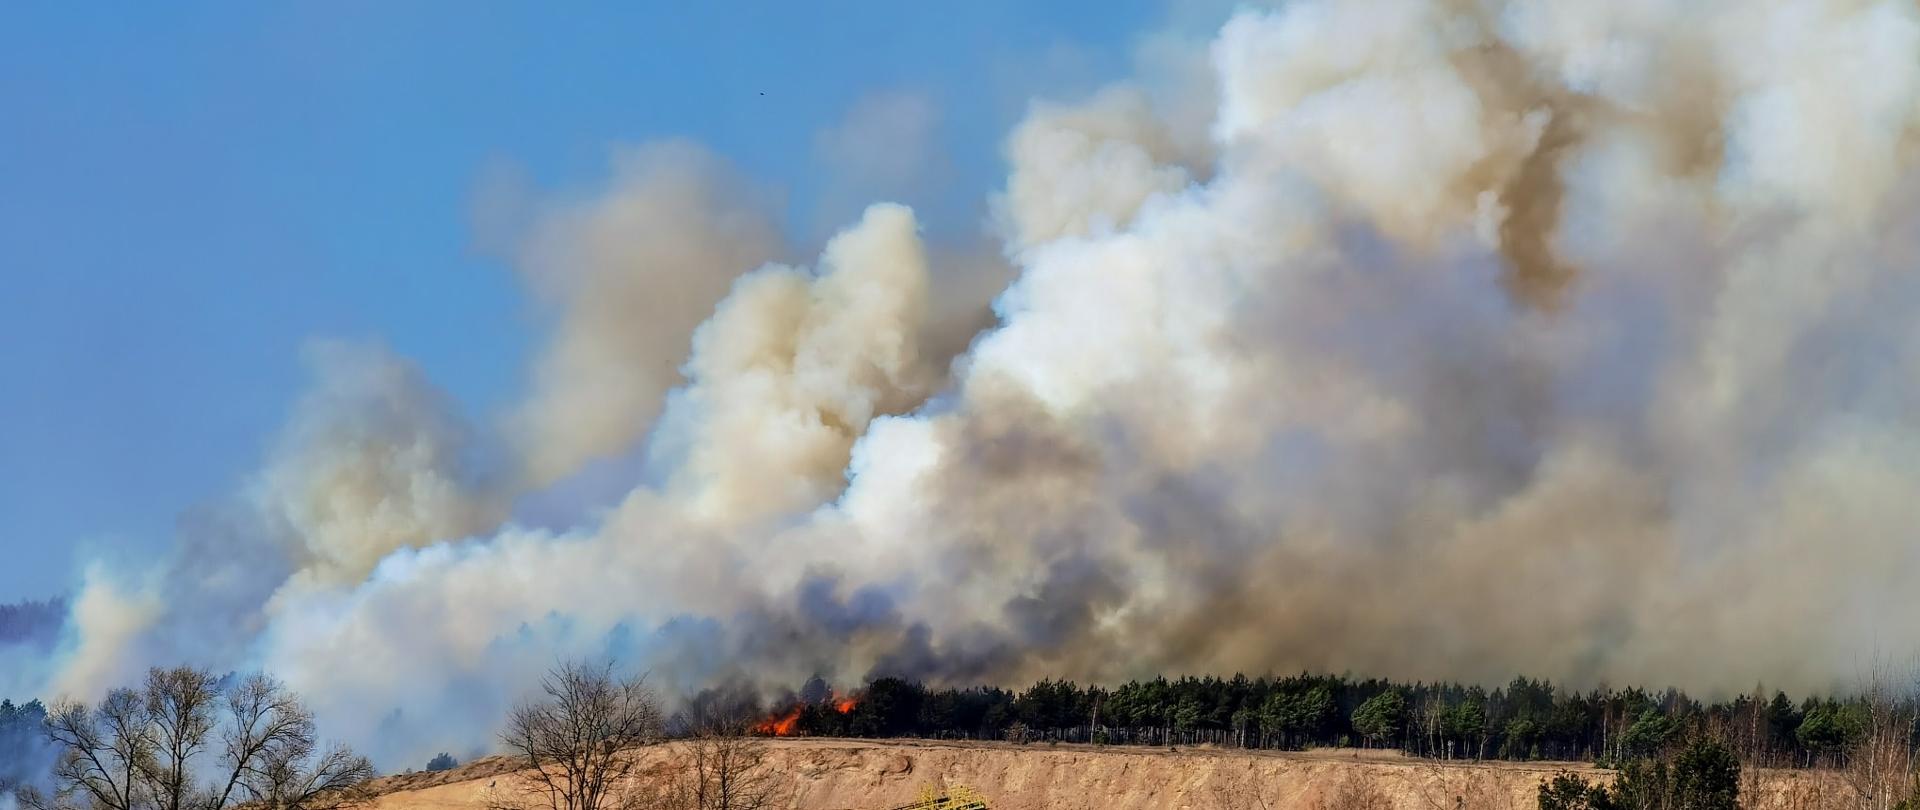 Na zdjęciu z oddali widać bardzo duży pożar traw i lasu. Na zdjęciu widać duże kłęby dymu unoszące się nad drzewami. Zdjęcie wykonane w porze wiosennej w słoneczny dzień